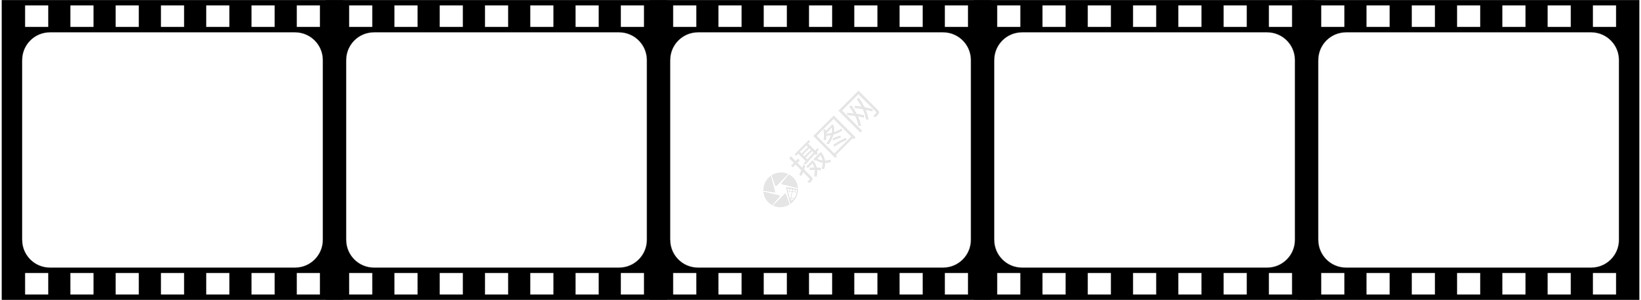 影片电影幻灯片黑色投影娱乐视频投影仪拍摄胶卷白色框架背景图片